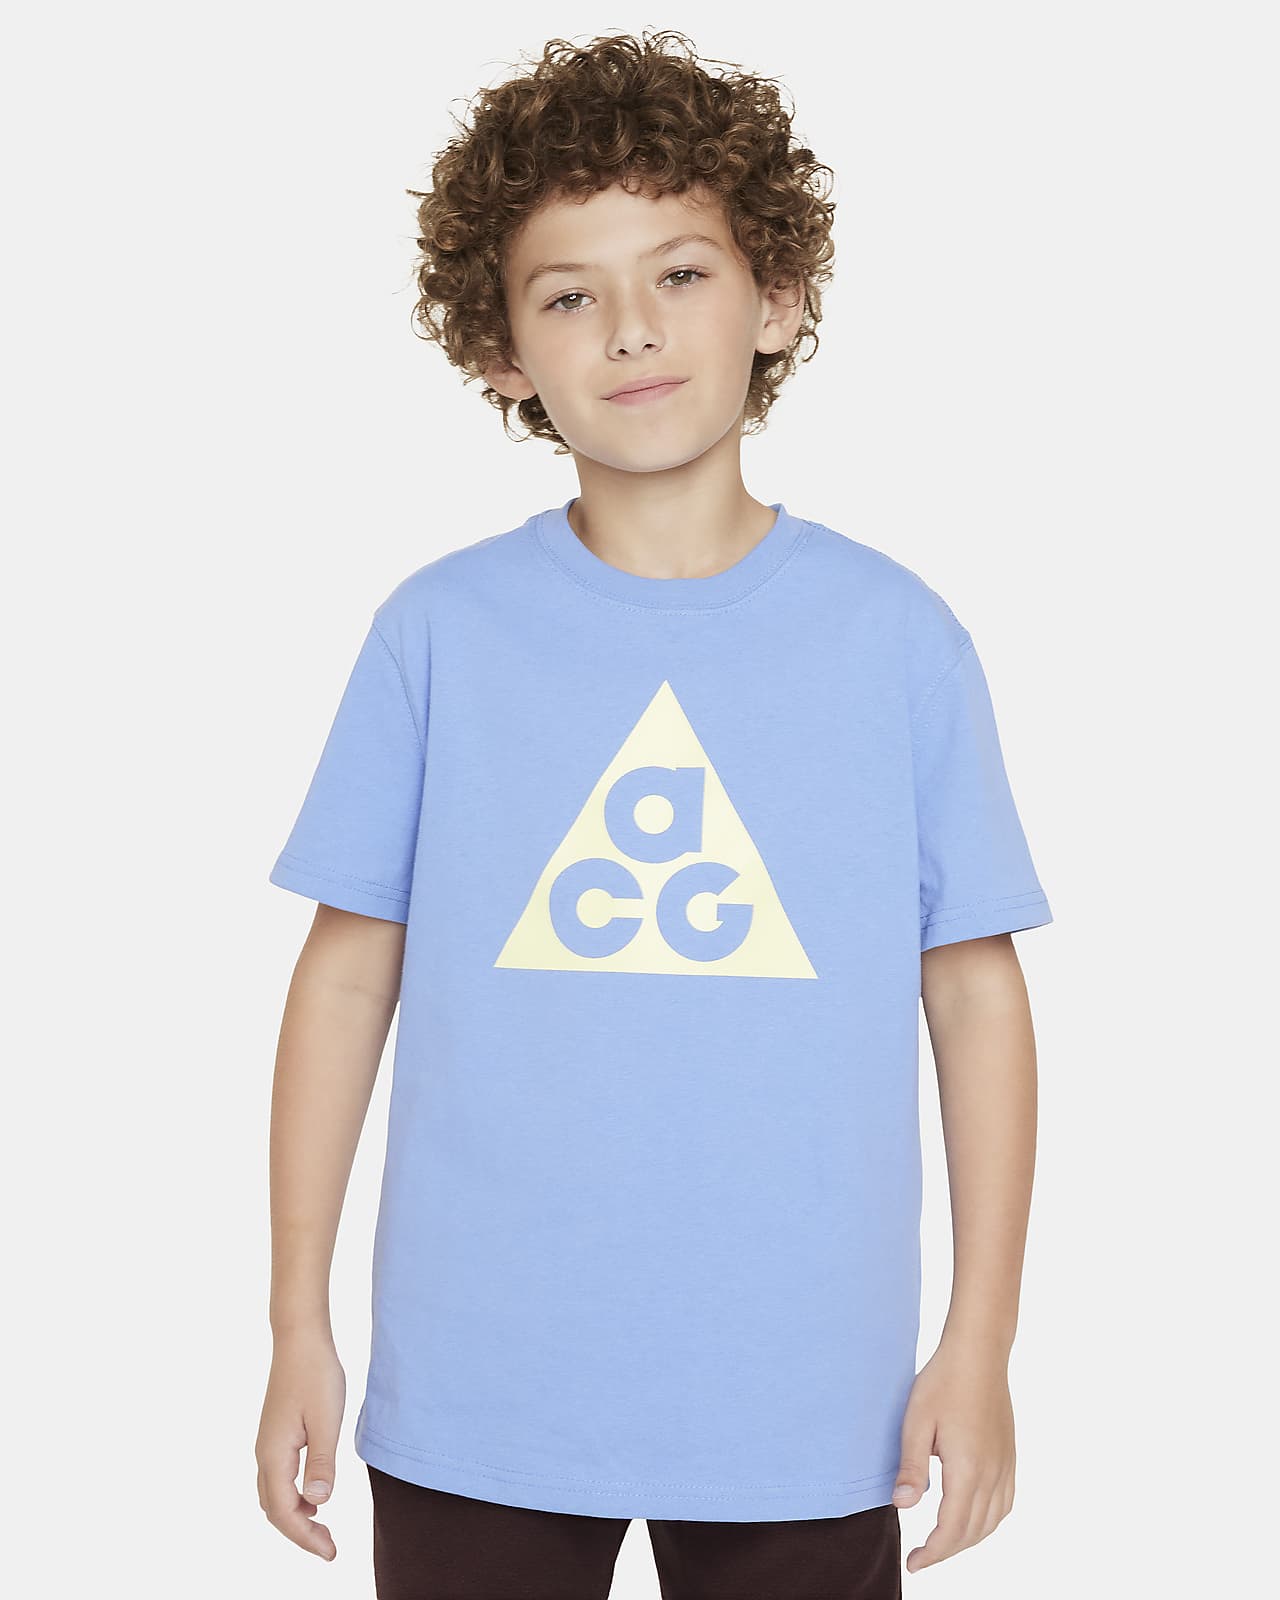 Tričko Nike ACG pro větší děti